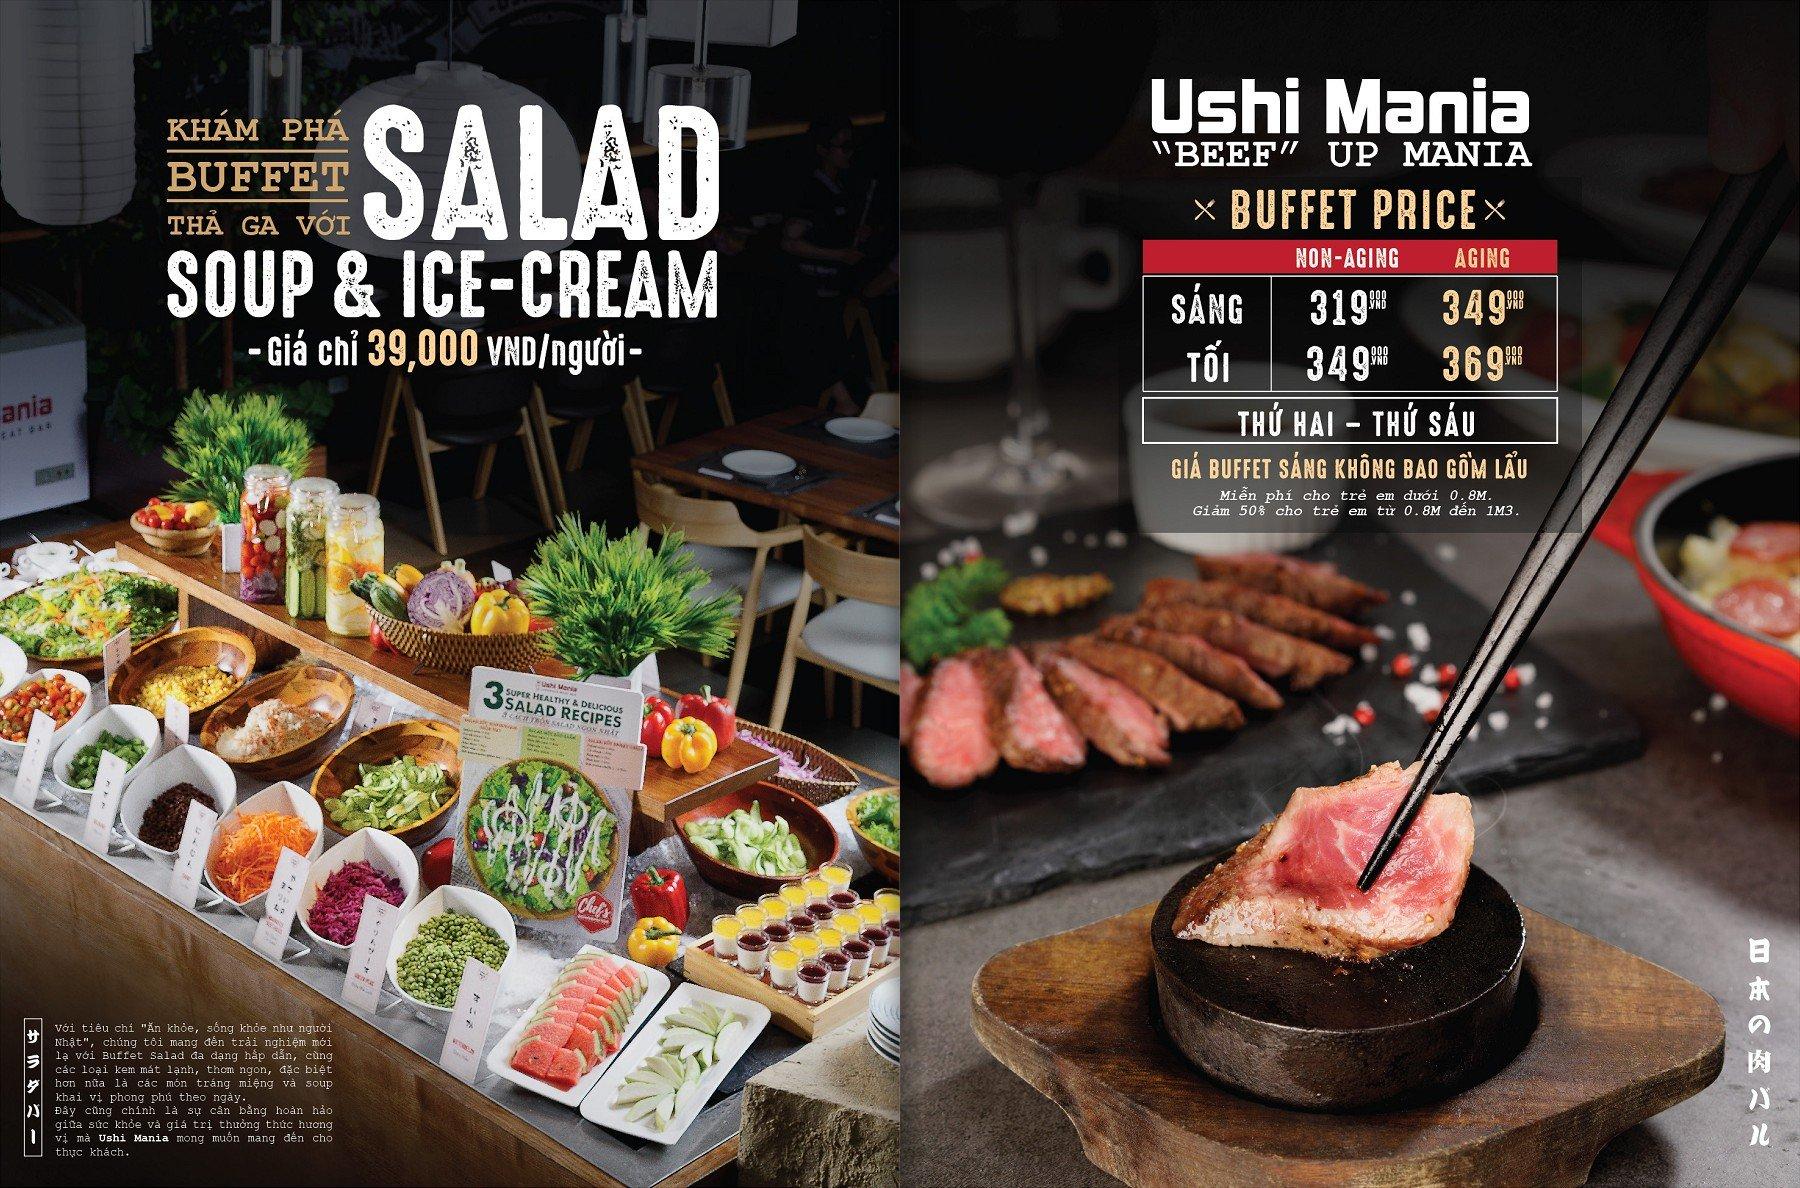 Menu quan đa dạng và nổi bật nhất là Bò nướng đá cùng quầy Salad đa dạng của Ushi Mania (Ảnh: Internet)